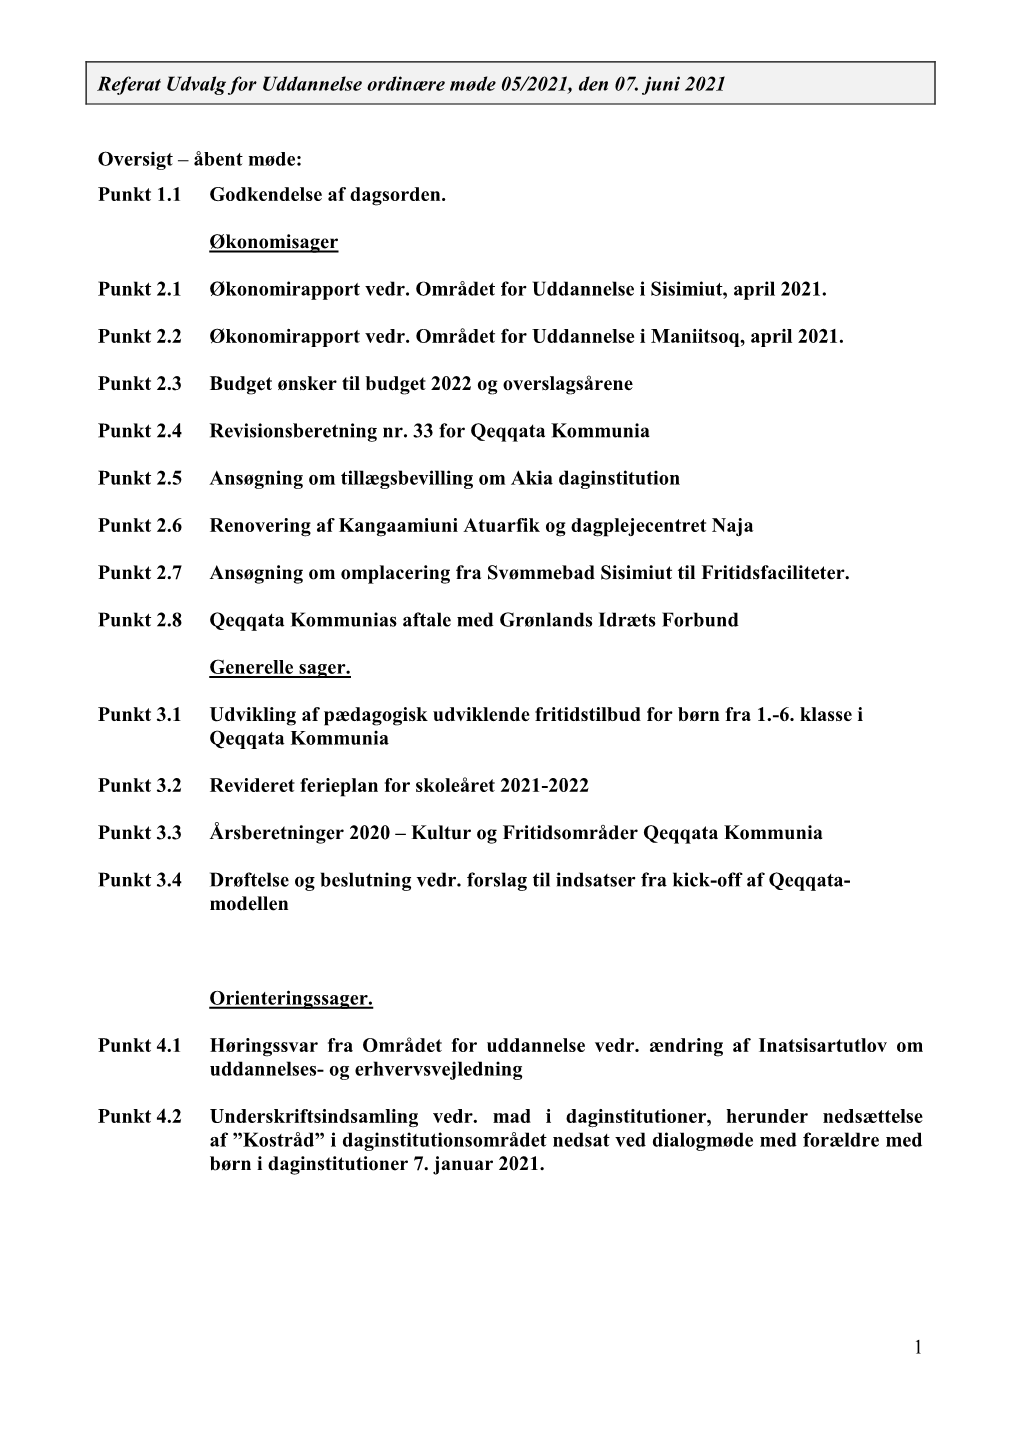 Referat Udvalg for Uddannelse Ordinære Møde 05/2021, Den 07